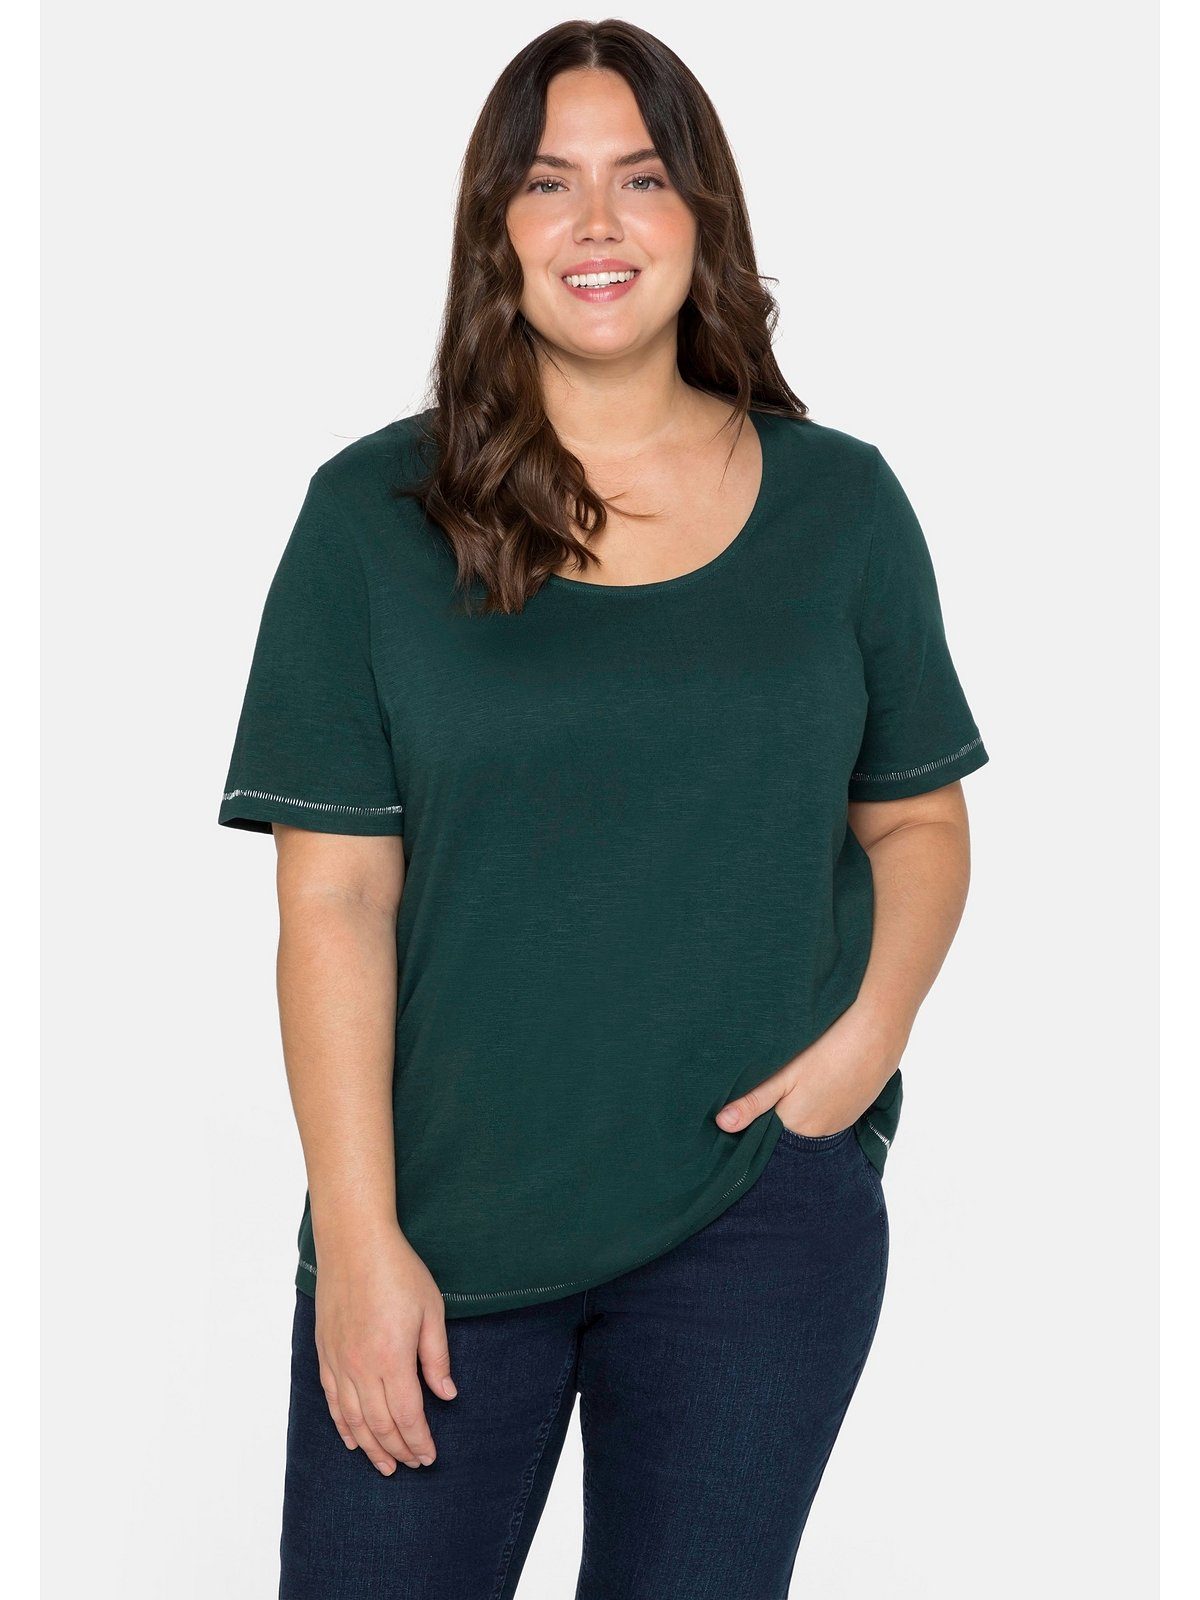 tiefgrün Große auf hinten mit der T-Shirt Sheego Größen Schulter Print